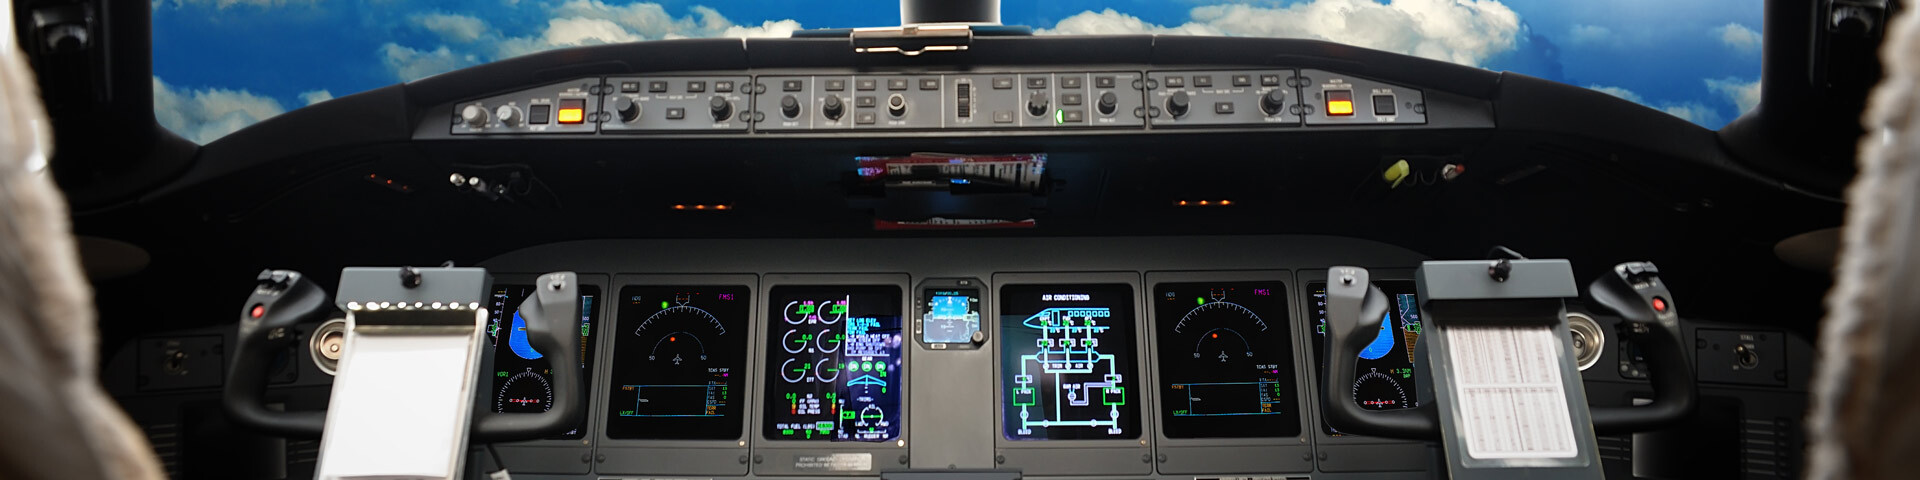 Tableau de bord d'avion avec écrans et commandes de pilotage.